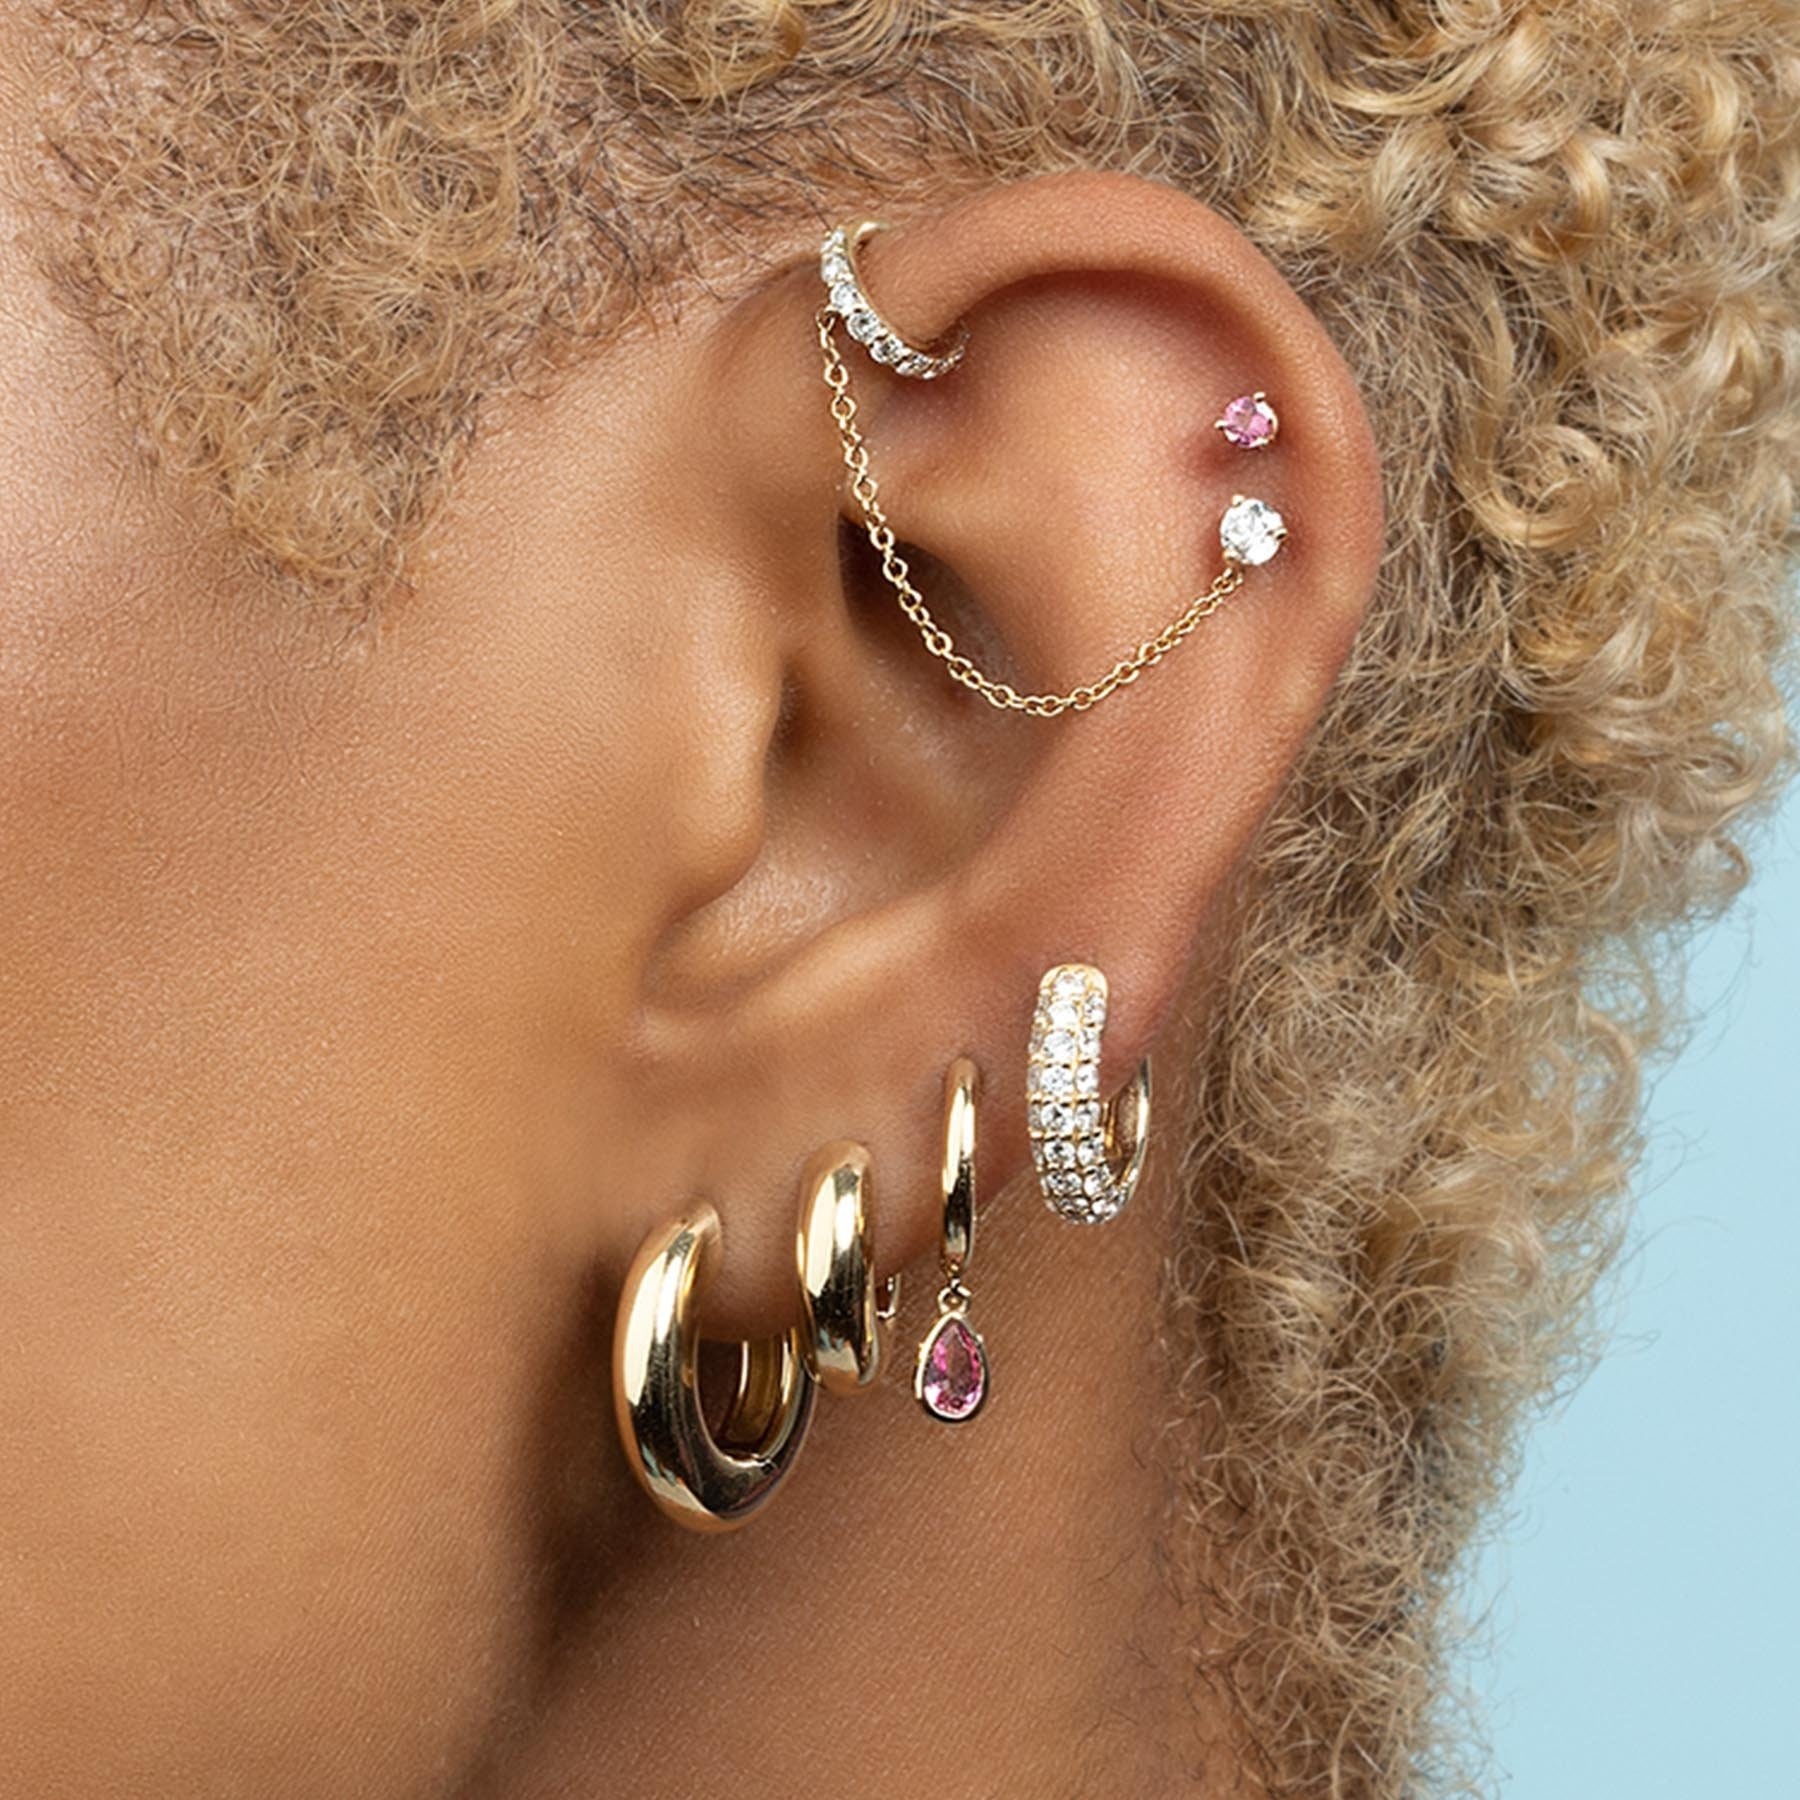 The New Trends In Women’s Earrings